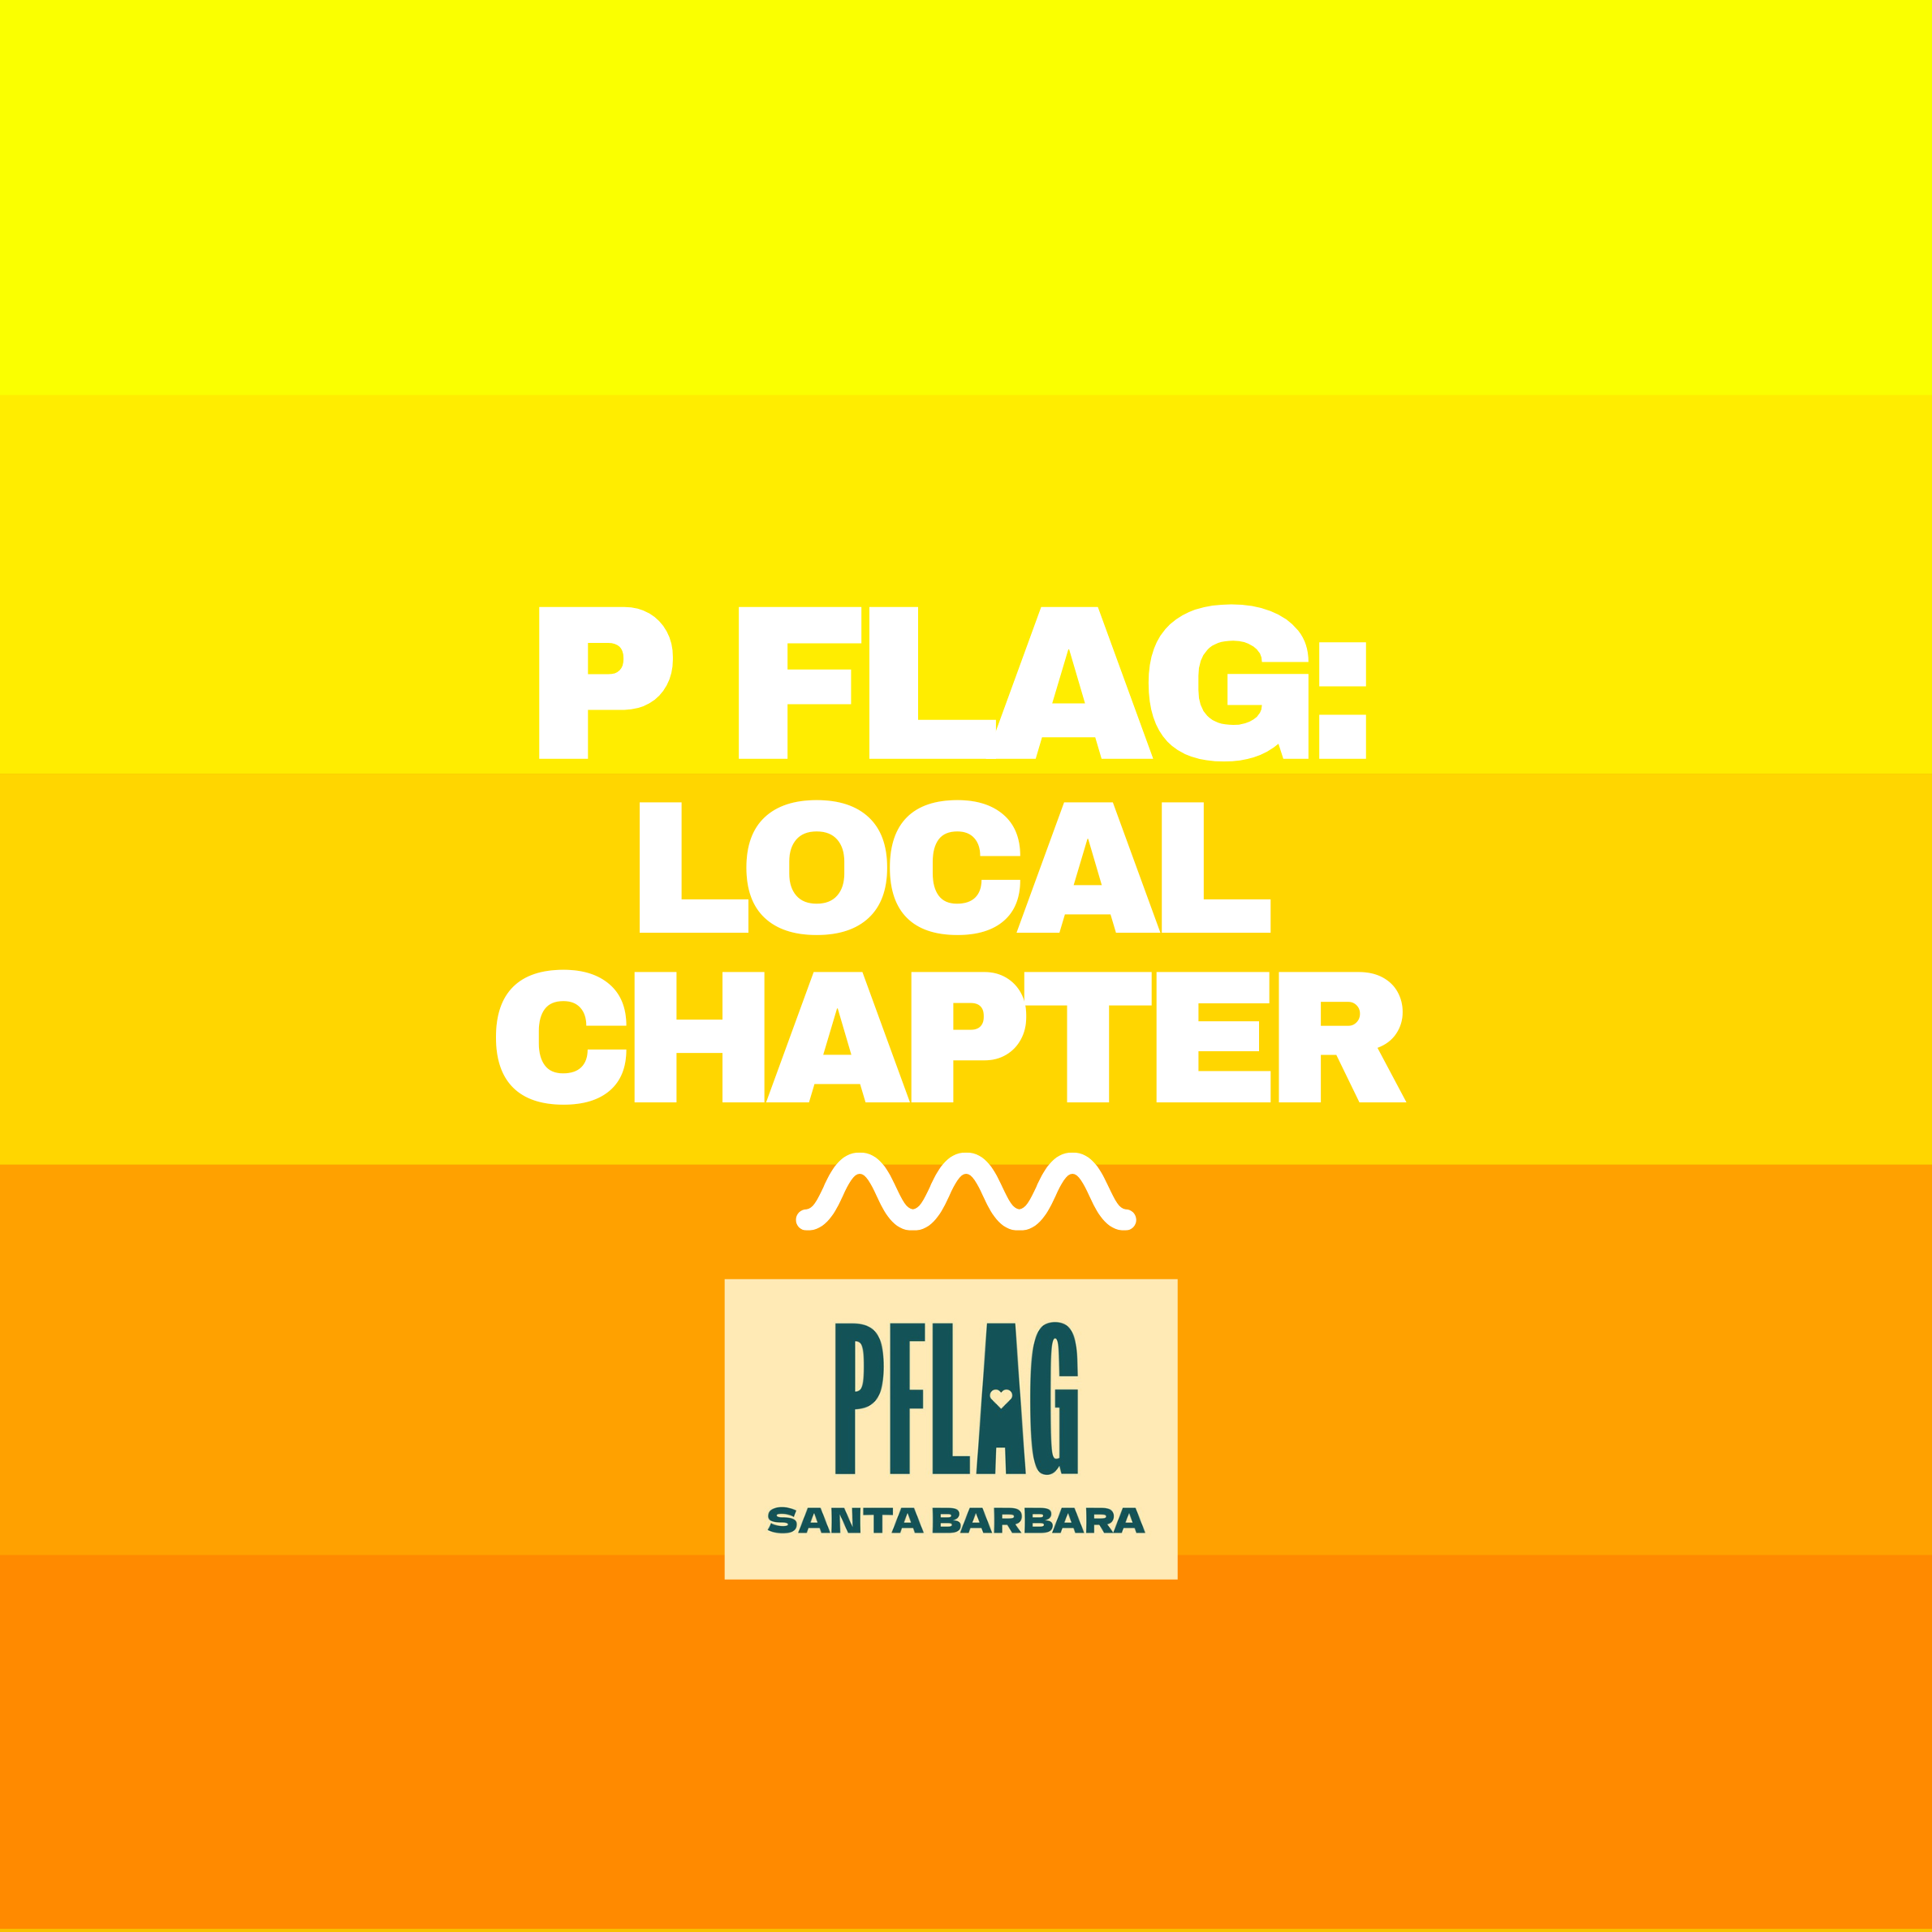 P-Flag Santa Barbara chapter